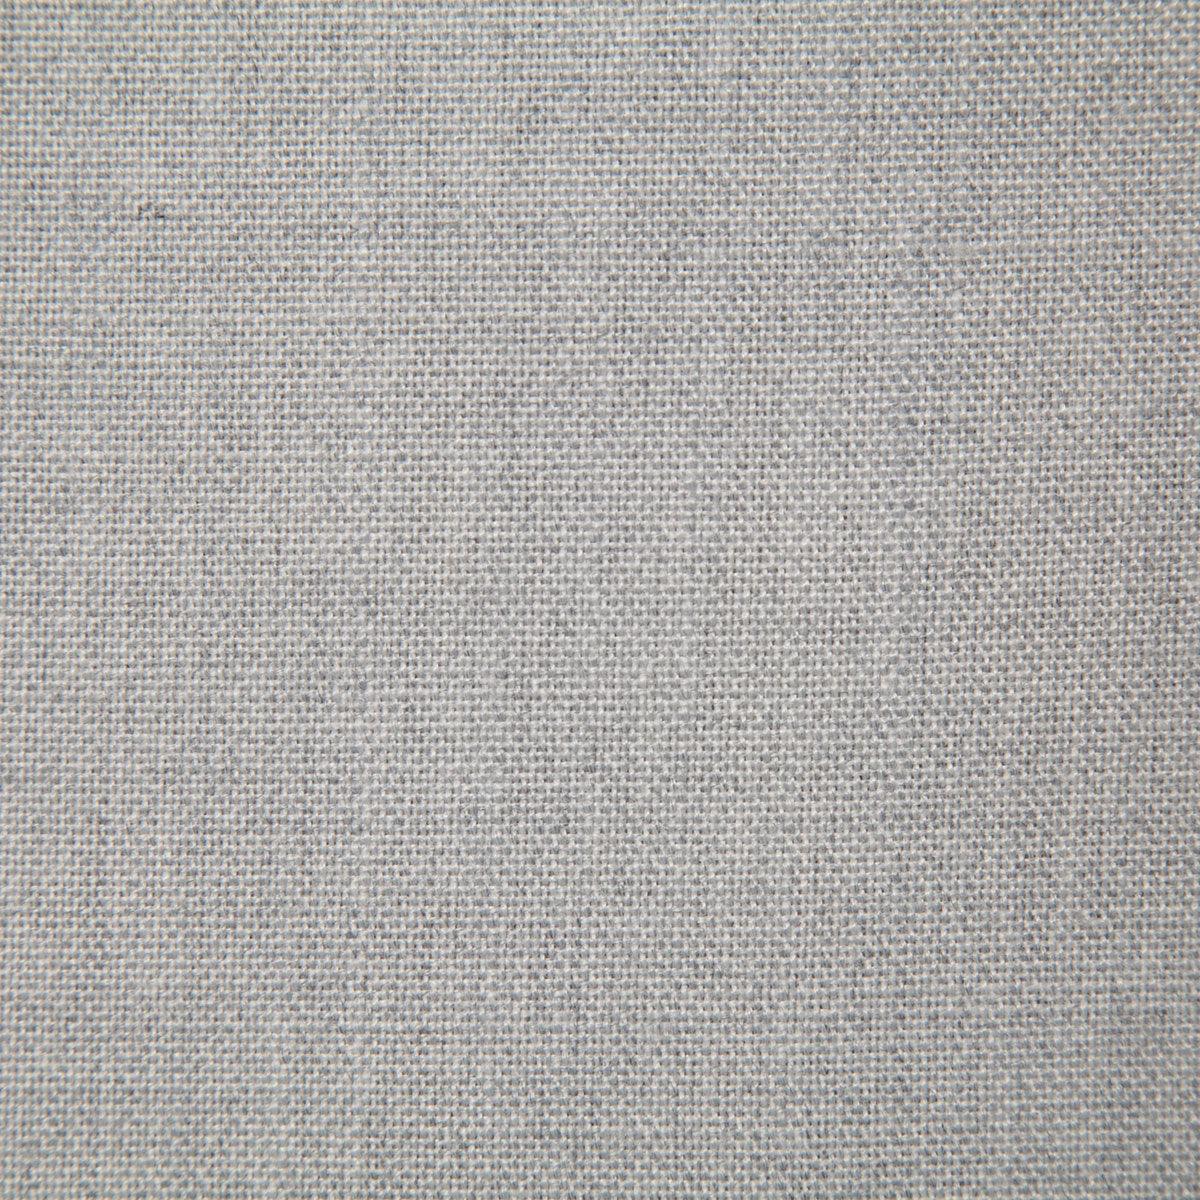 7065 - LINCOLN STONE - Atlanta Fabrics